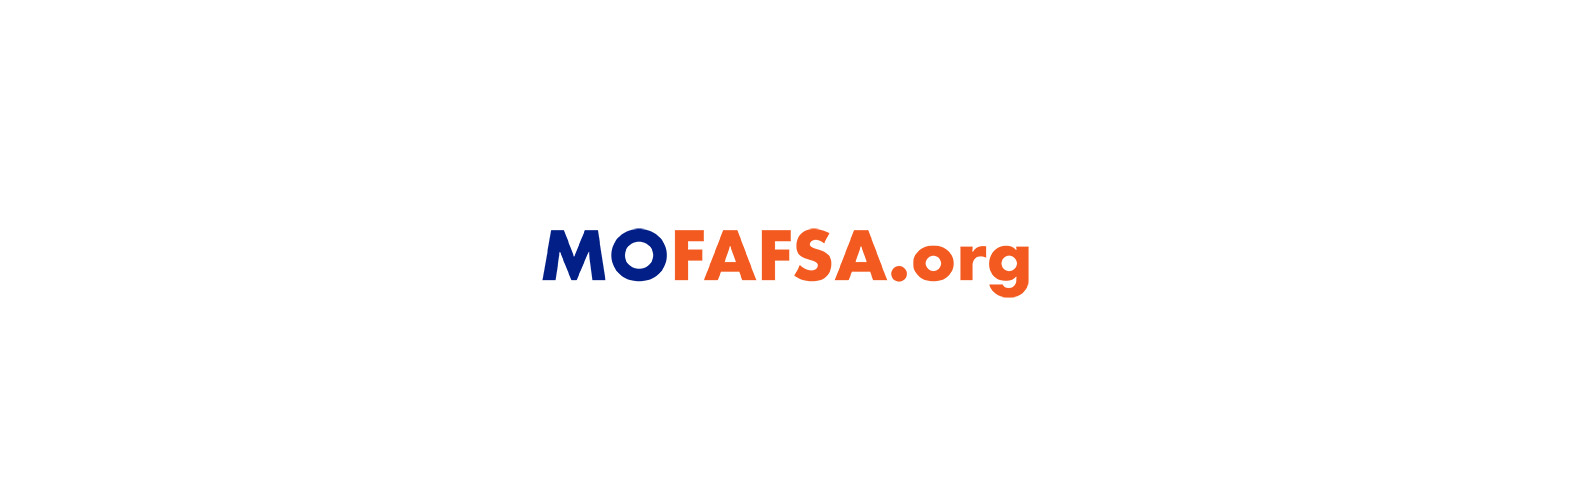 mofafsa.org